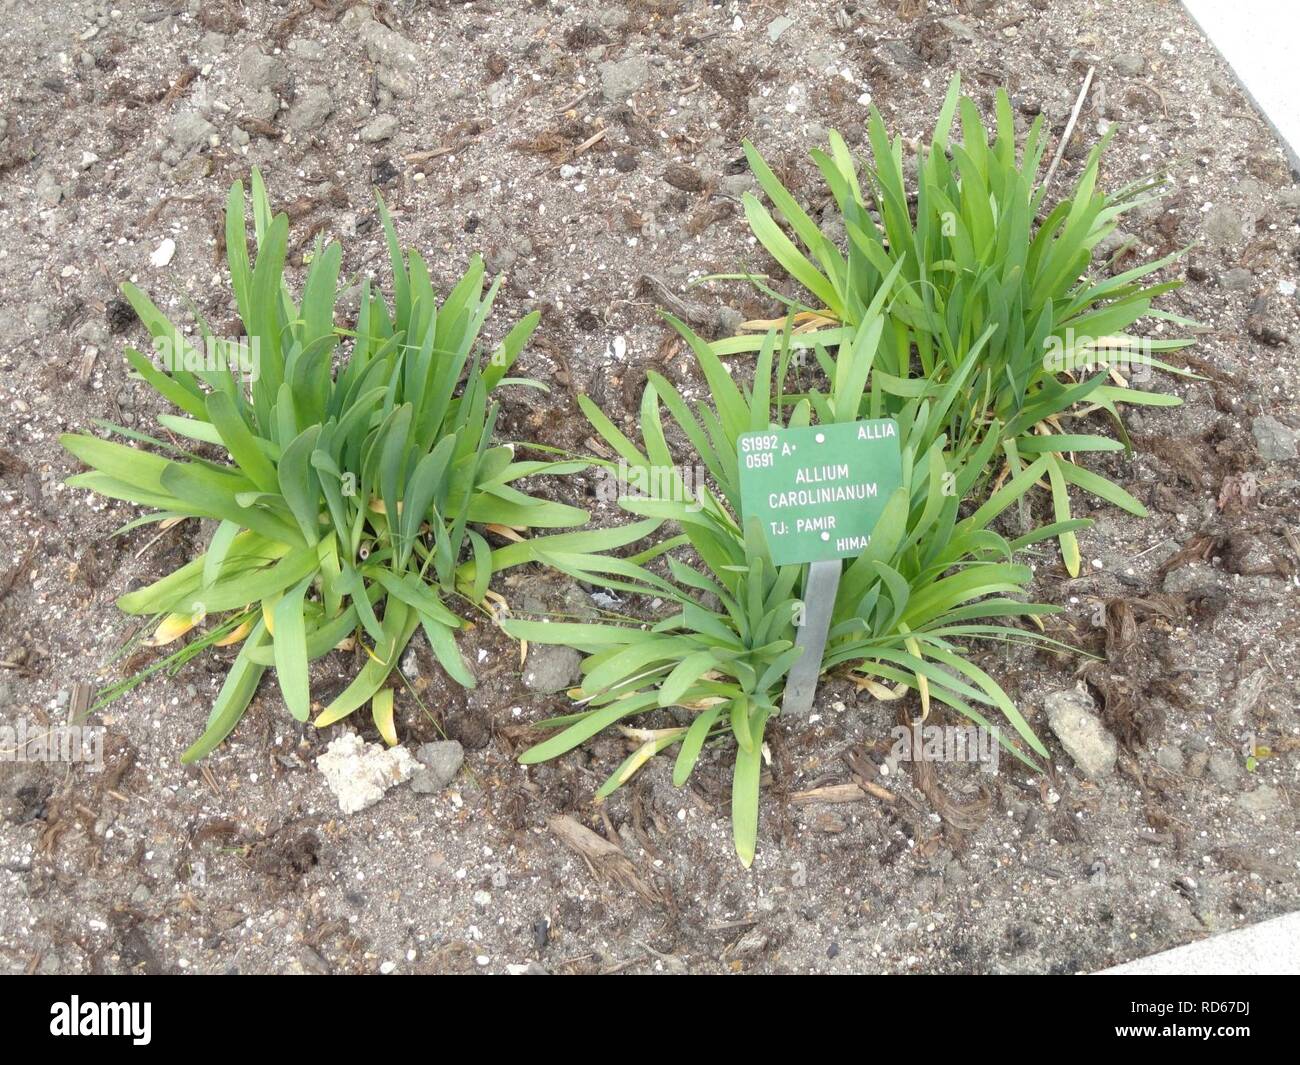 Allium carolinianum - Copenhagen Botanical Garden - Stock Photo